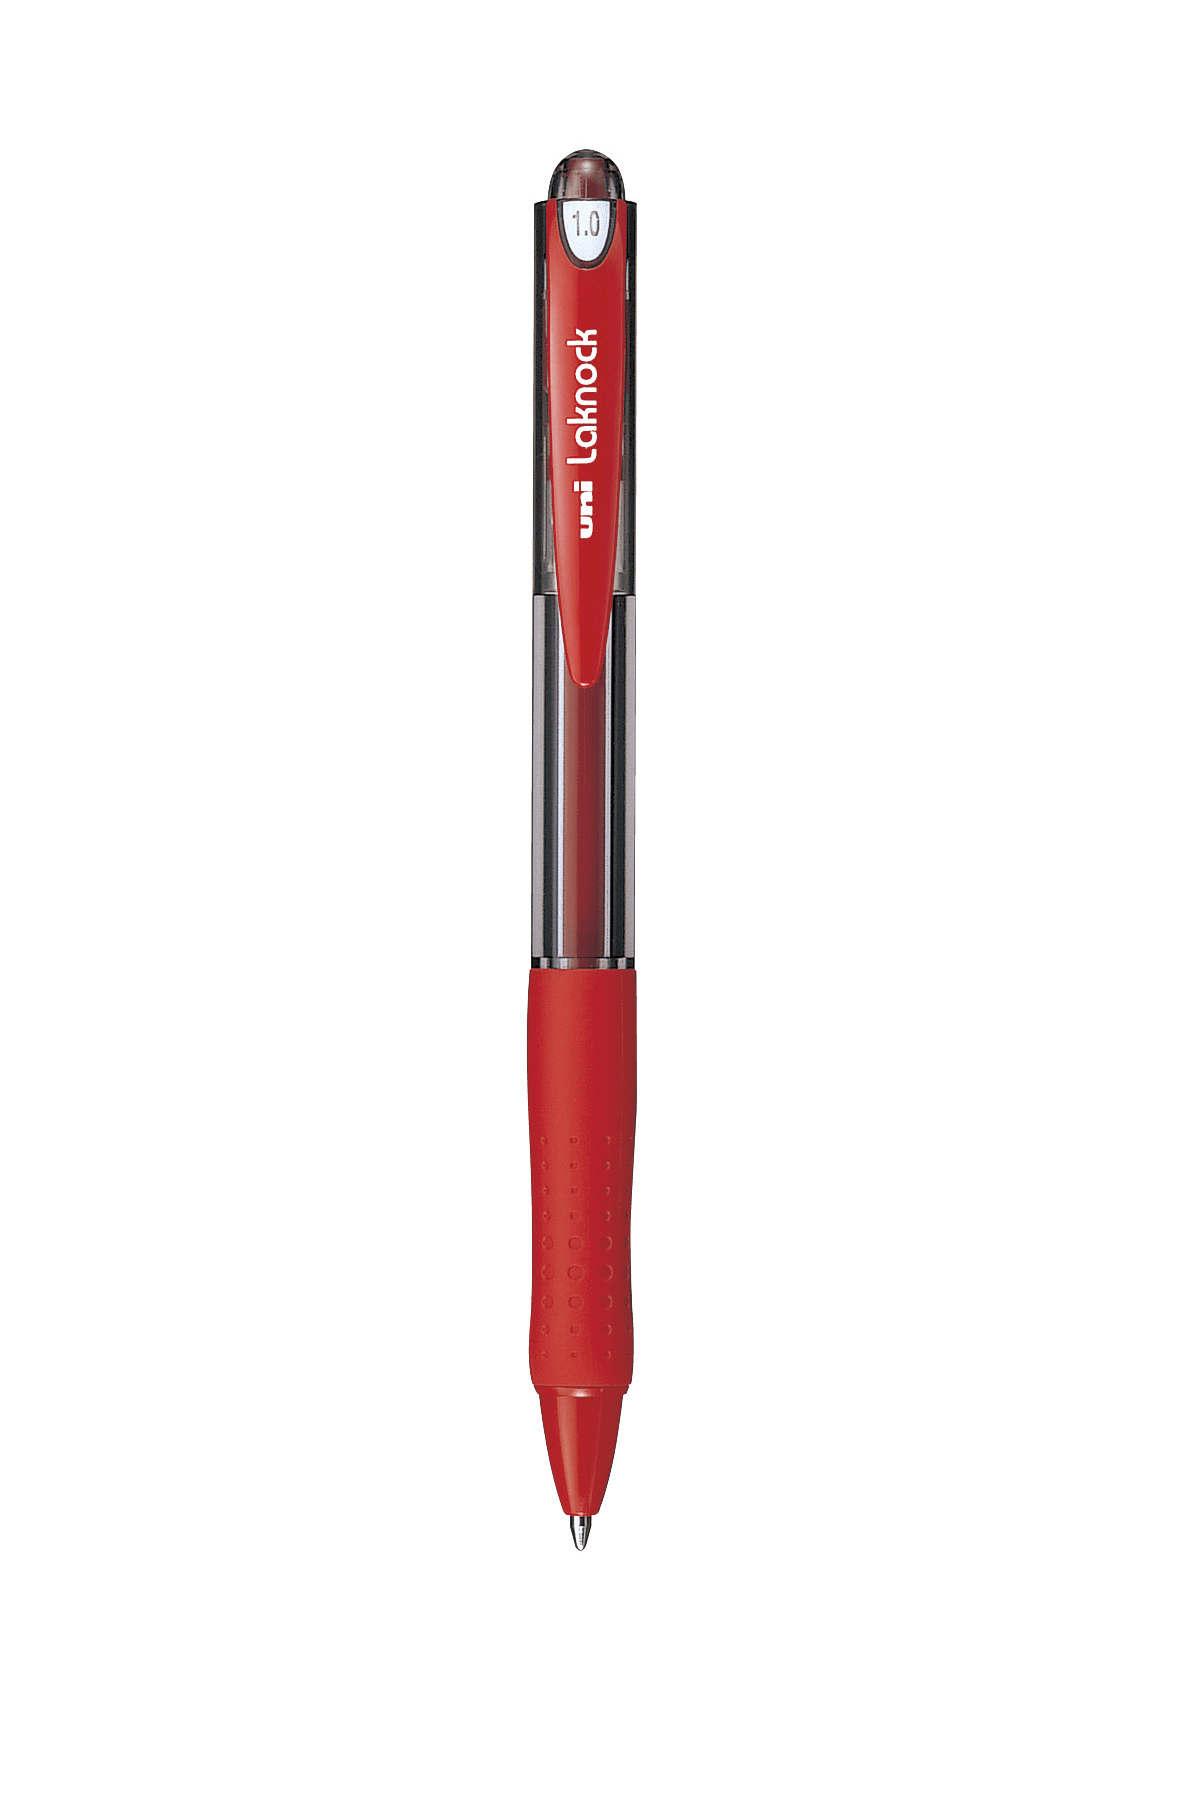 ปากกาลูกลื่นแบบกด uni Laknock SN-100 สีแดง 1.0 มม.